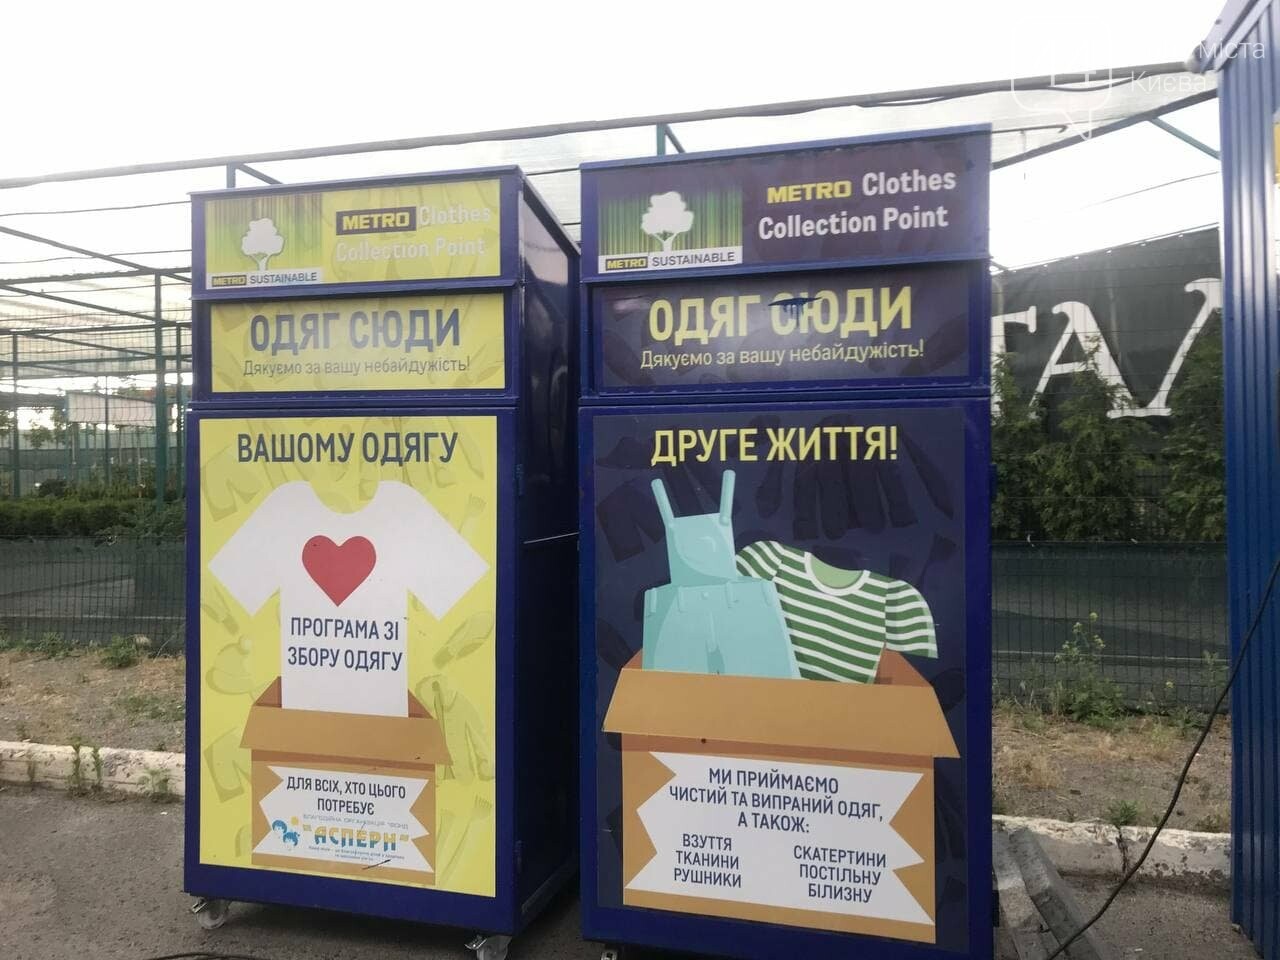 В Киеве прошла экоакция "ЭКОномь планету - сортируй мусор", к которой присоединилась Alyona Alyona